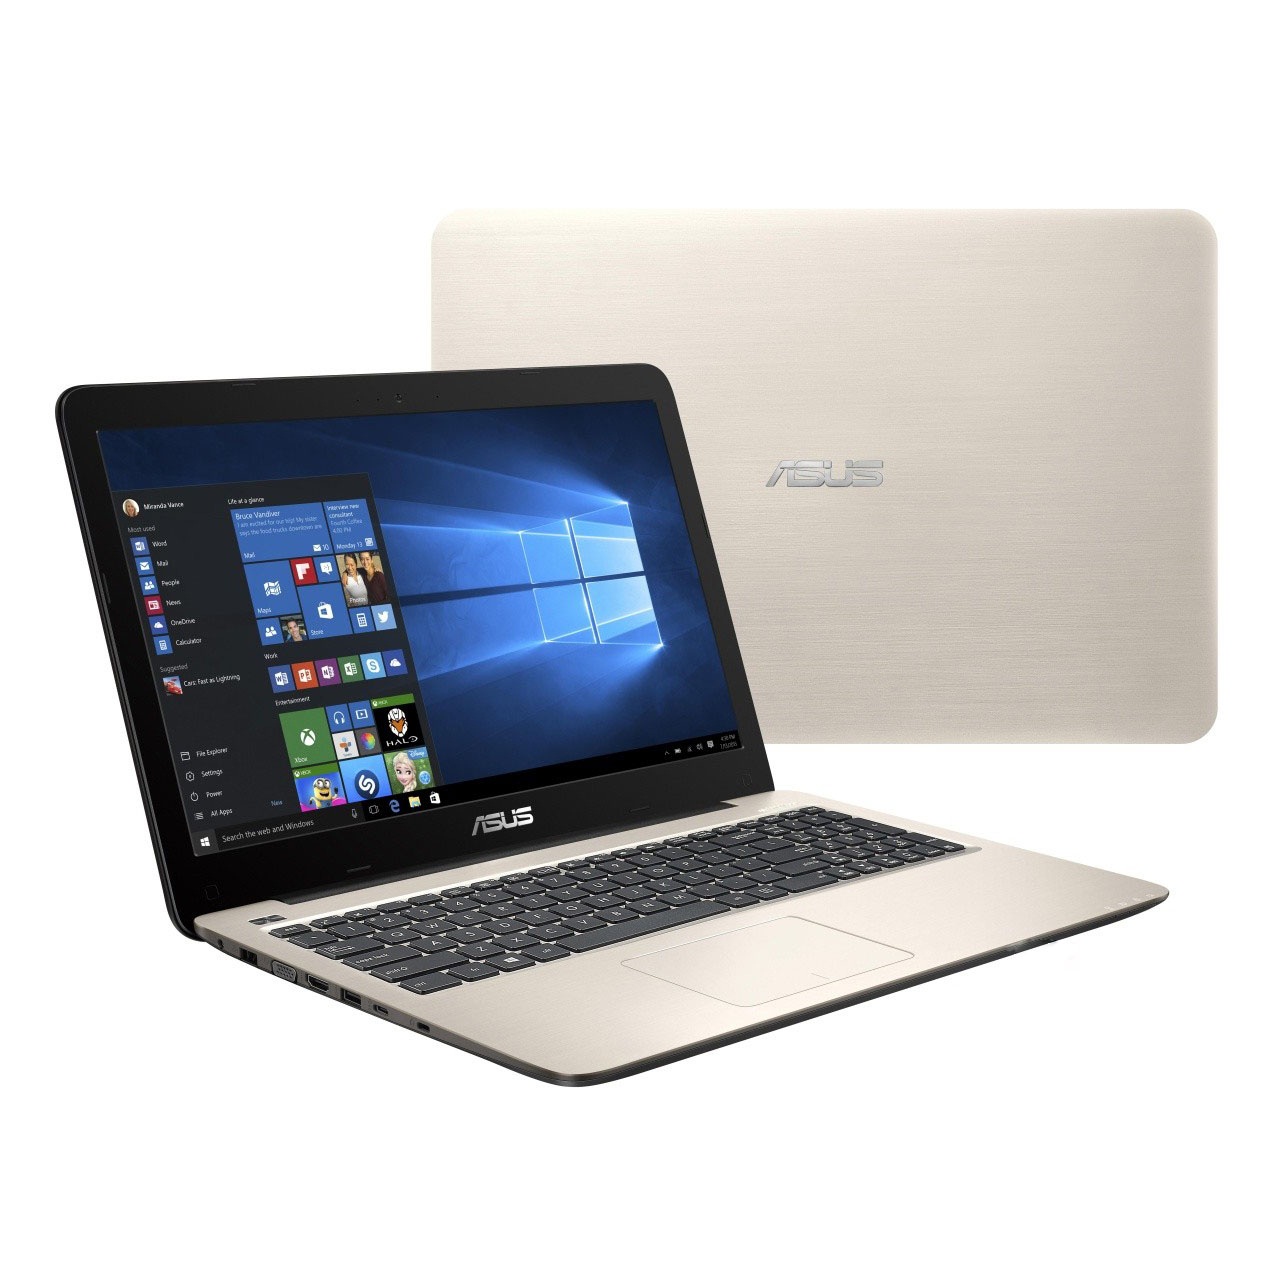 Laptop Asus A556UR, I5 6200U 4G SSD128 Vga GT930MX 2G Đẹp zin 100% Giá rẻ